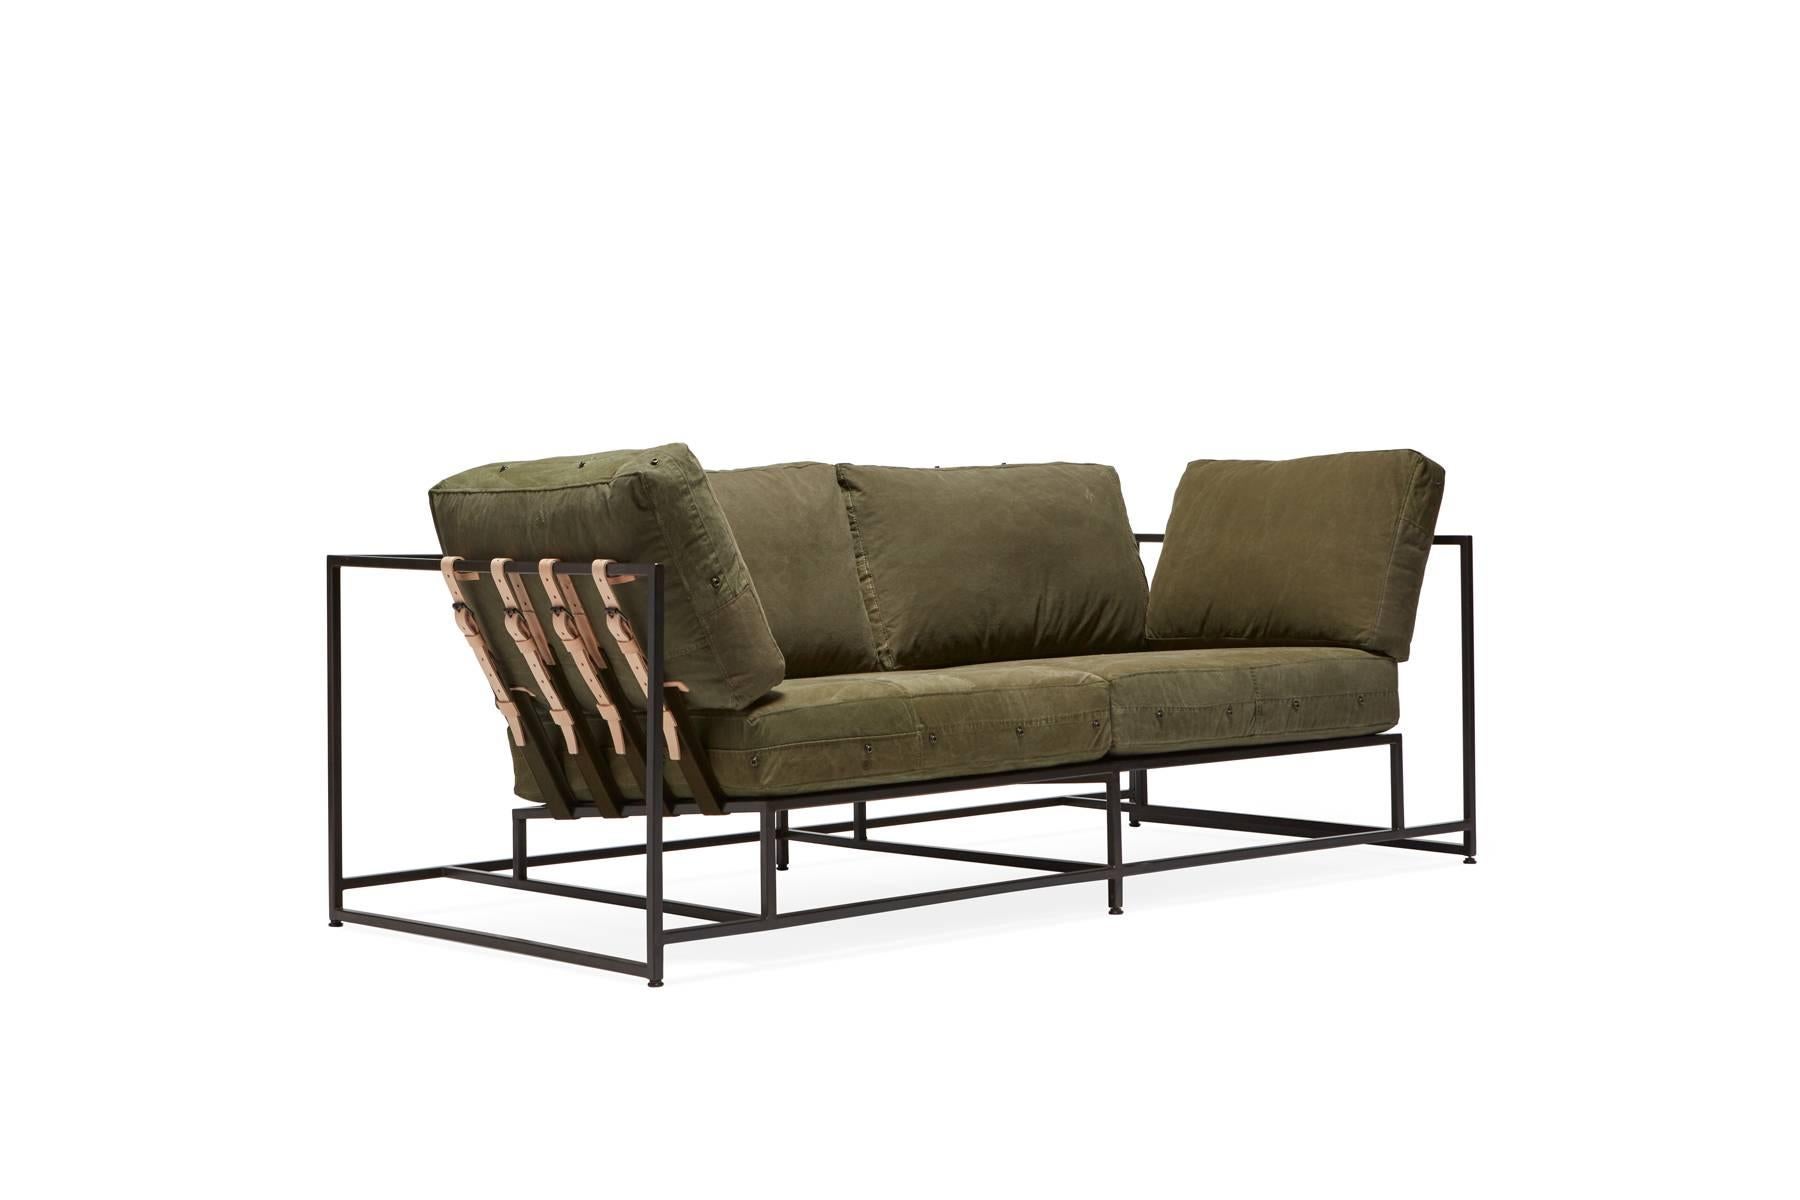 Das Inheritance Two Seat Sofa von Stephen Kenn ist ebenso bequem wie einzigartig. Das Design zeichnet sich durch eine exponierte Konstruktion aus, die aus drei Elementen besteht - einem Stahlrahmen, einer weichen Polsterung und stützenden Gurten.